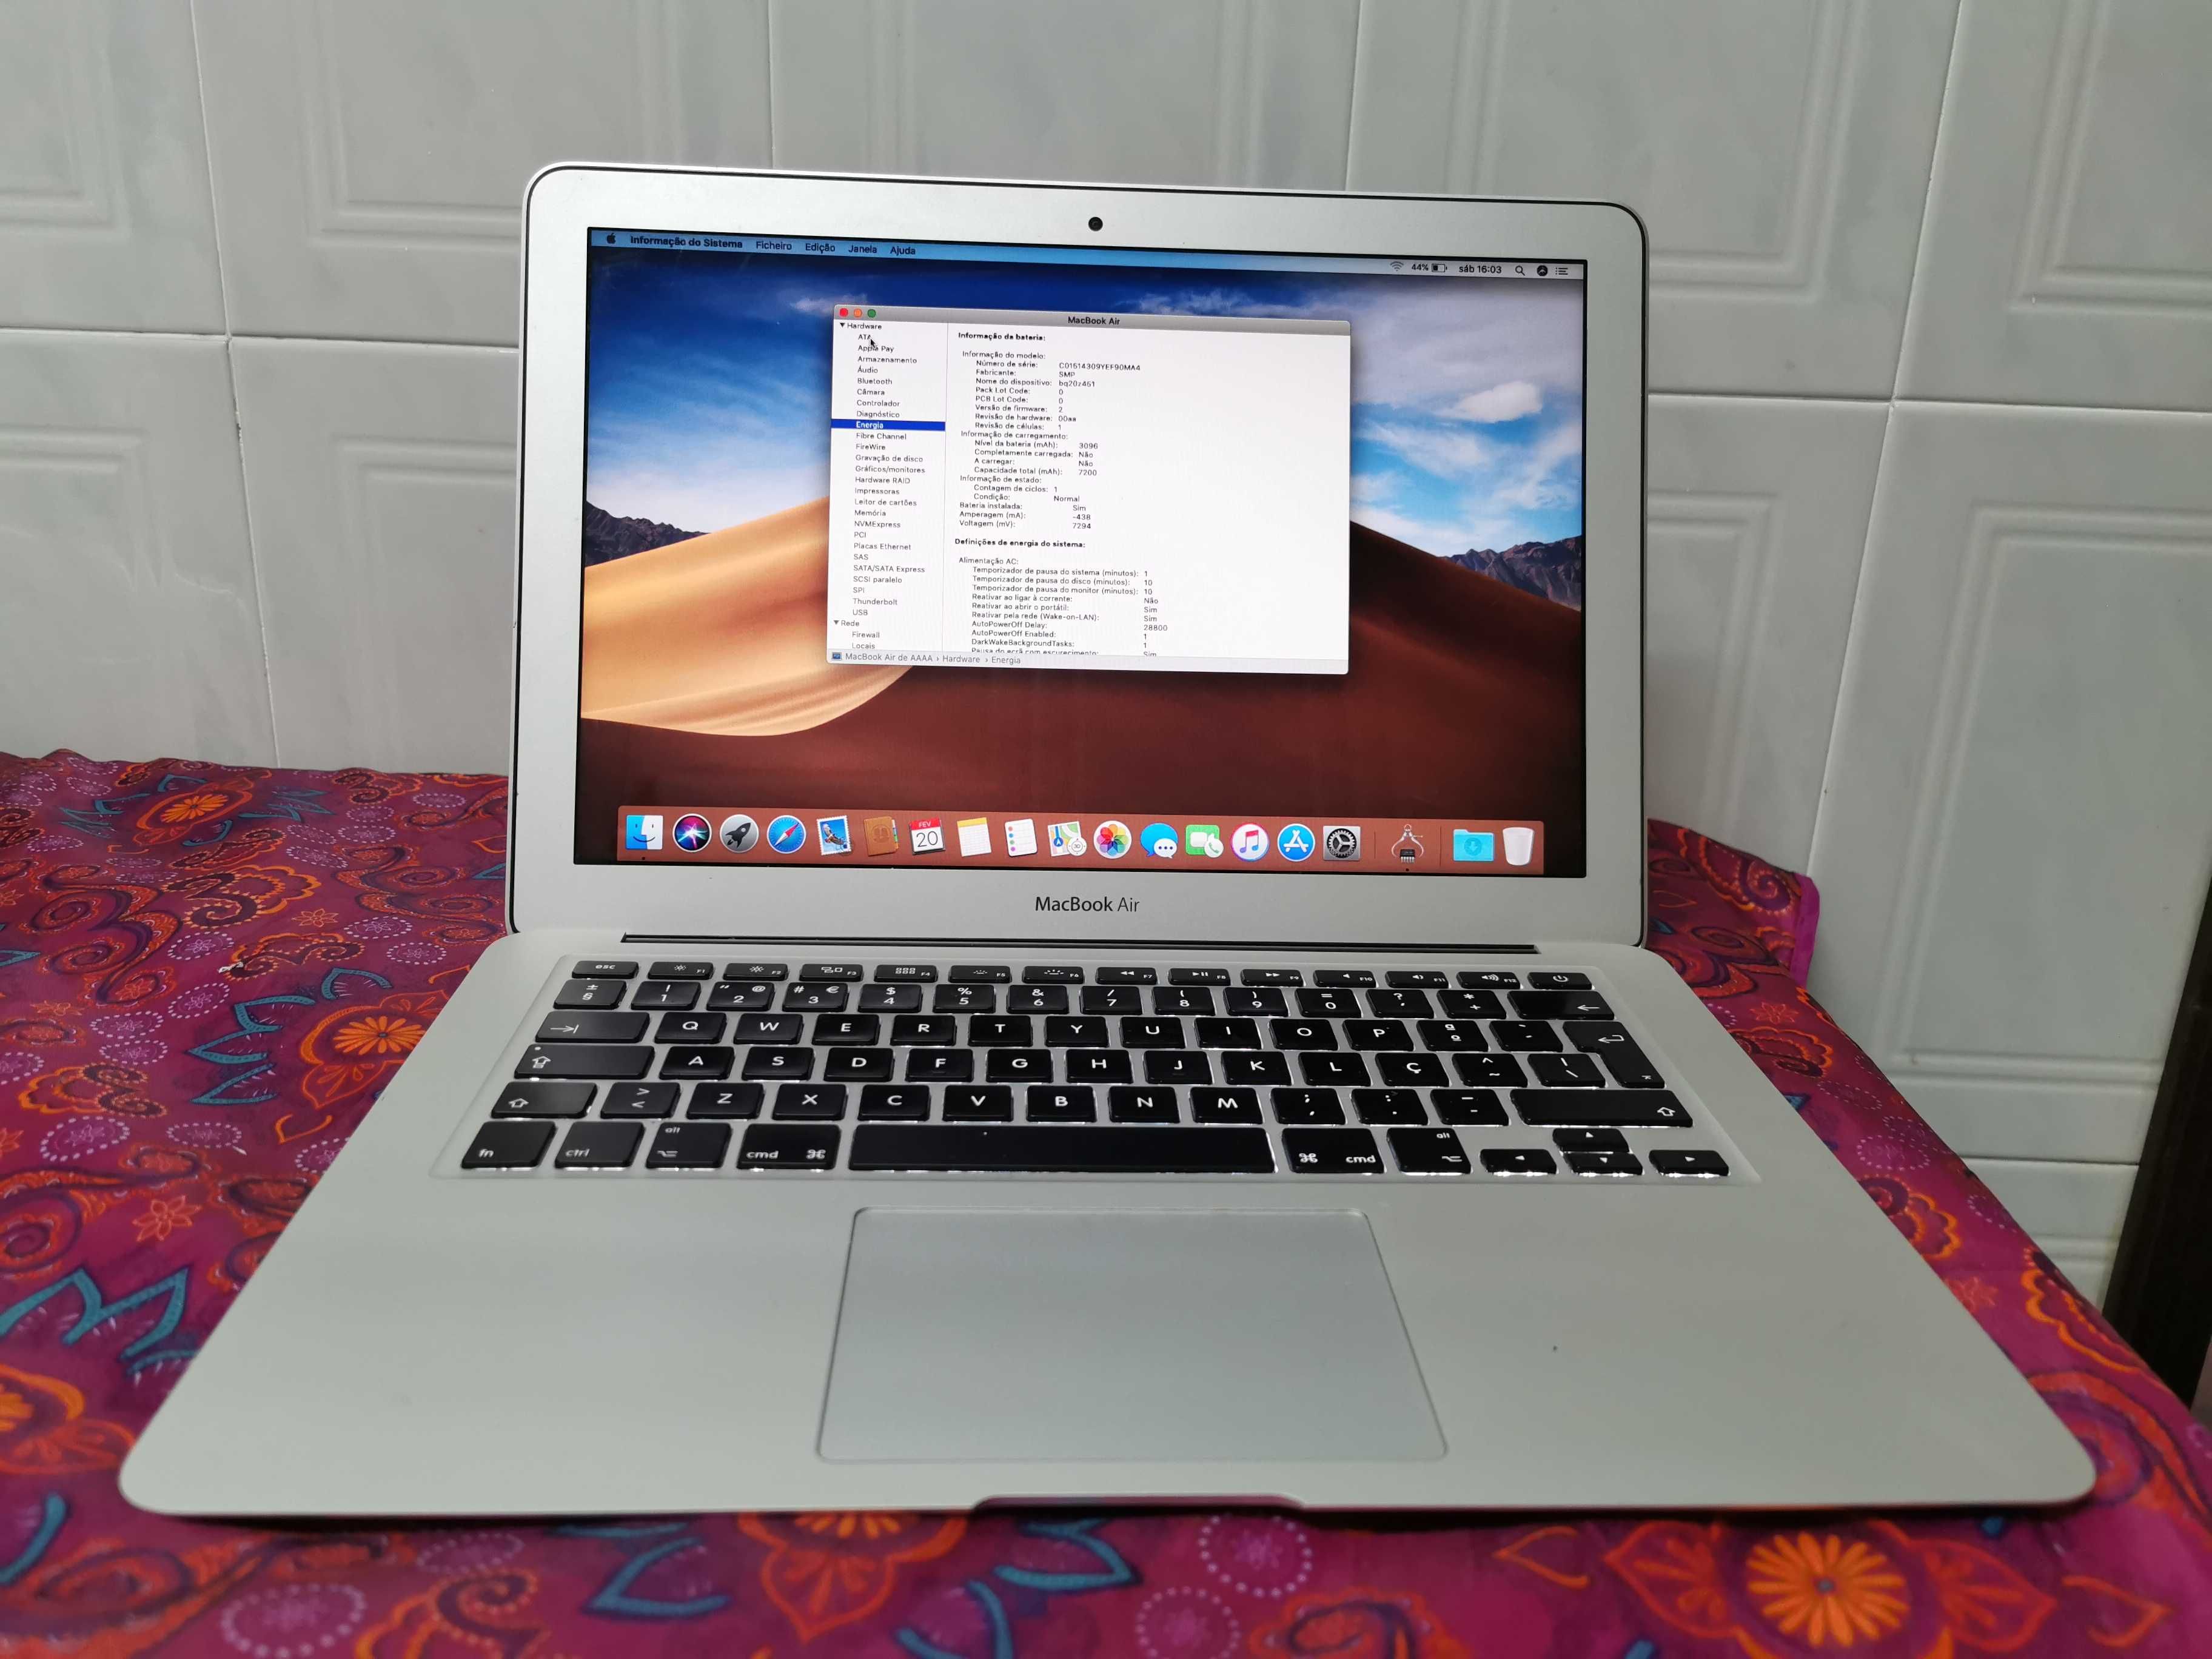 MacBook Air 13", (Late 2015), bateria nova